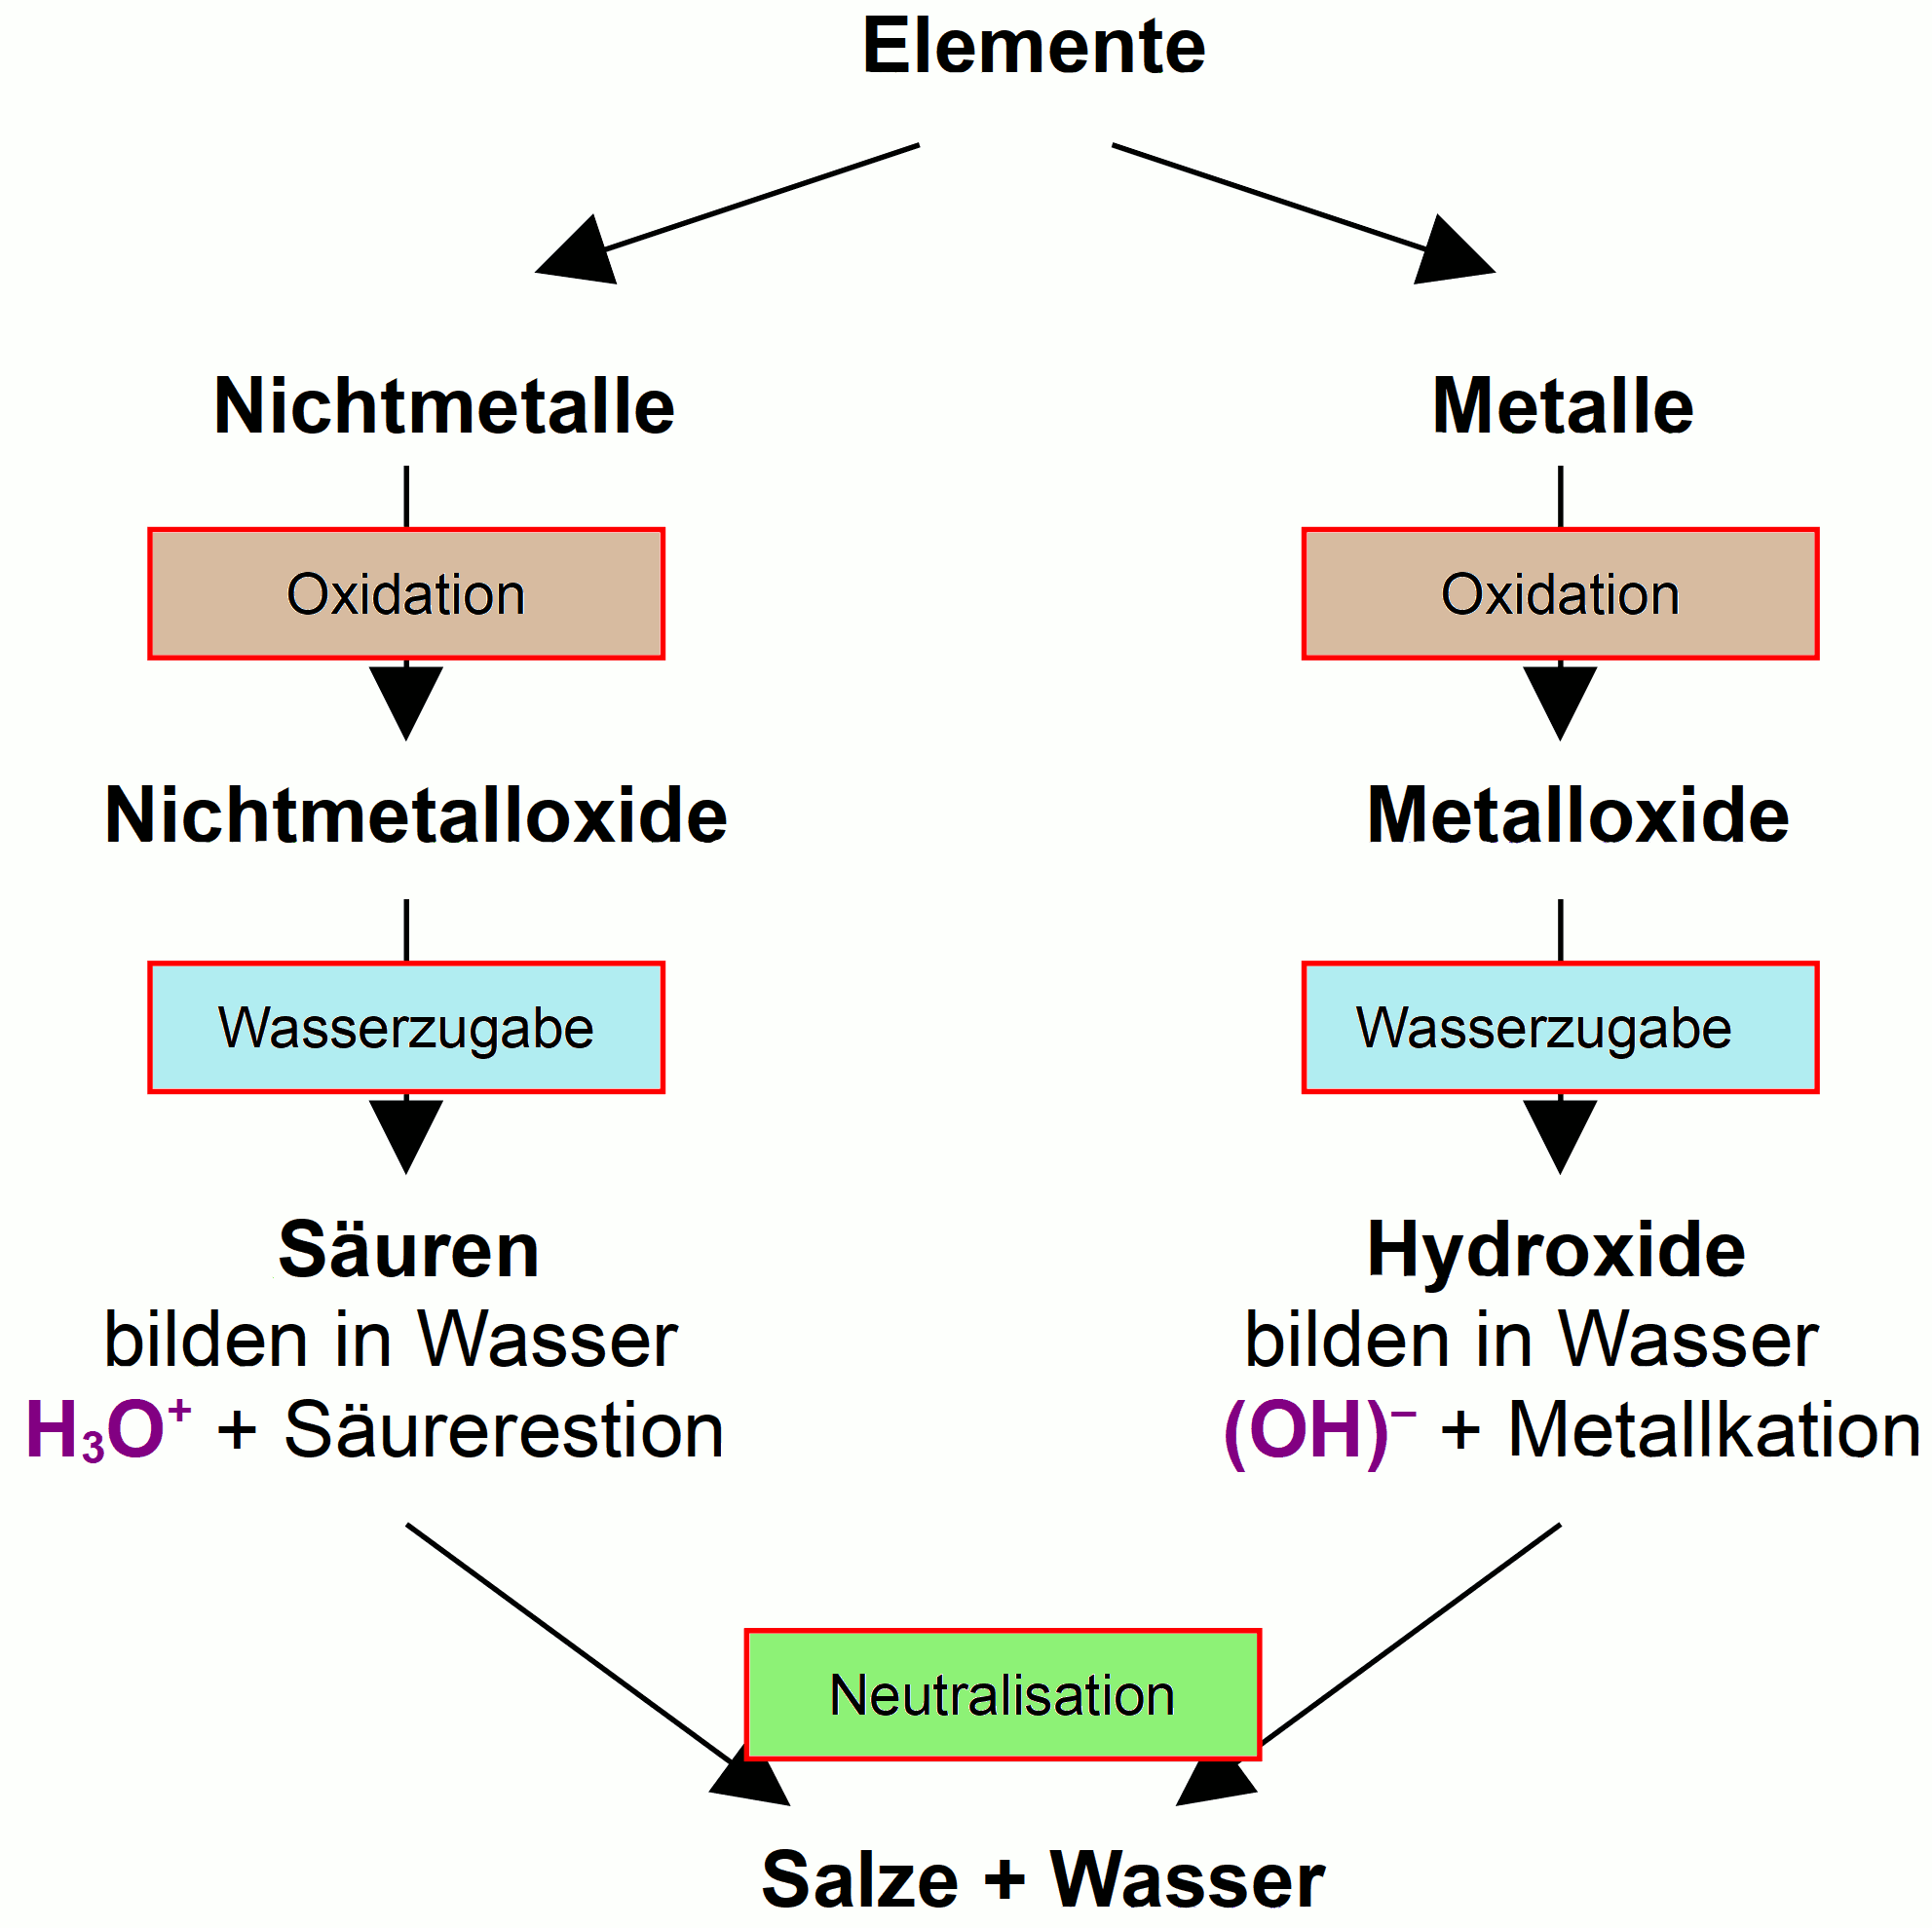 ZUsammenfassung: Elemente bilden durch Oxidation Säuren und Laugen.